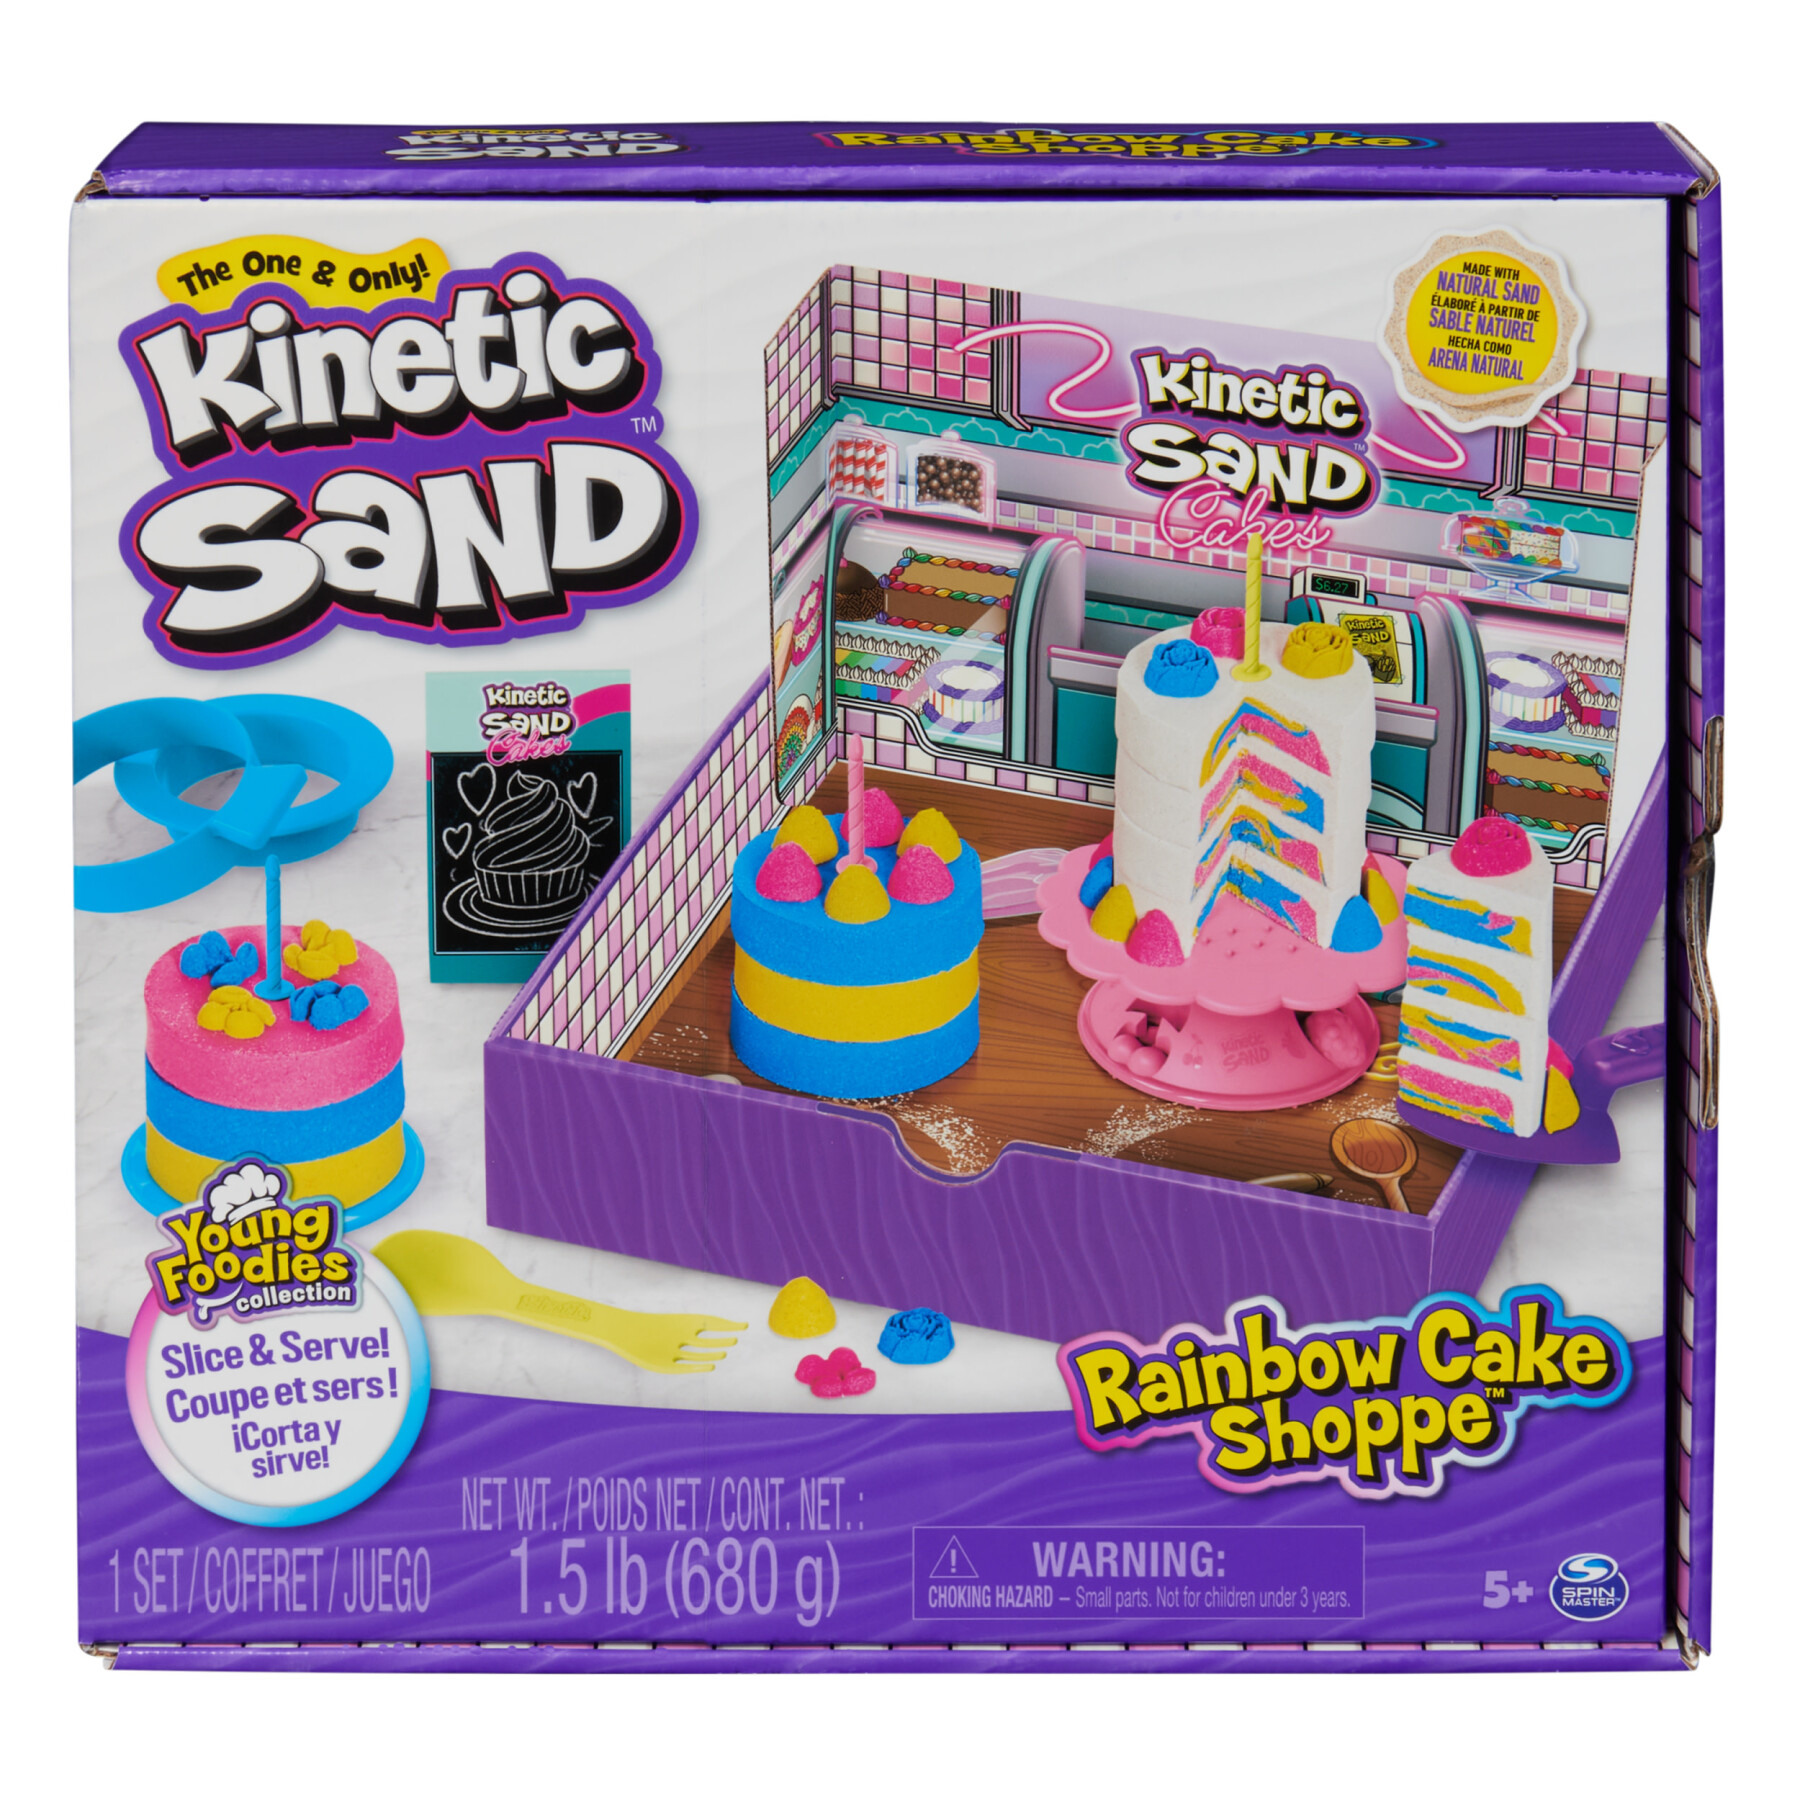 Kinetic sand rainbow cake shoppe, 680 g di sabbia da gioco gialla, rosa, blu e bianca profumata alla vaniglia, 10 attrezzi da cucina e accessori, giocattoli sensoriali per bambini dai 5 anni in su - KINETIC SAND